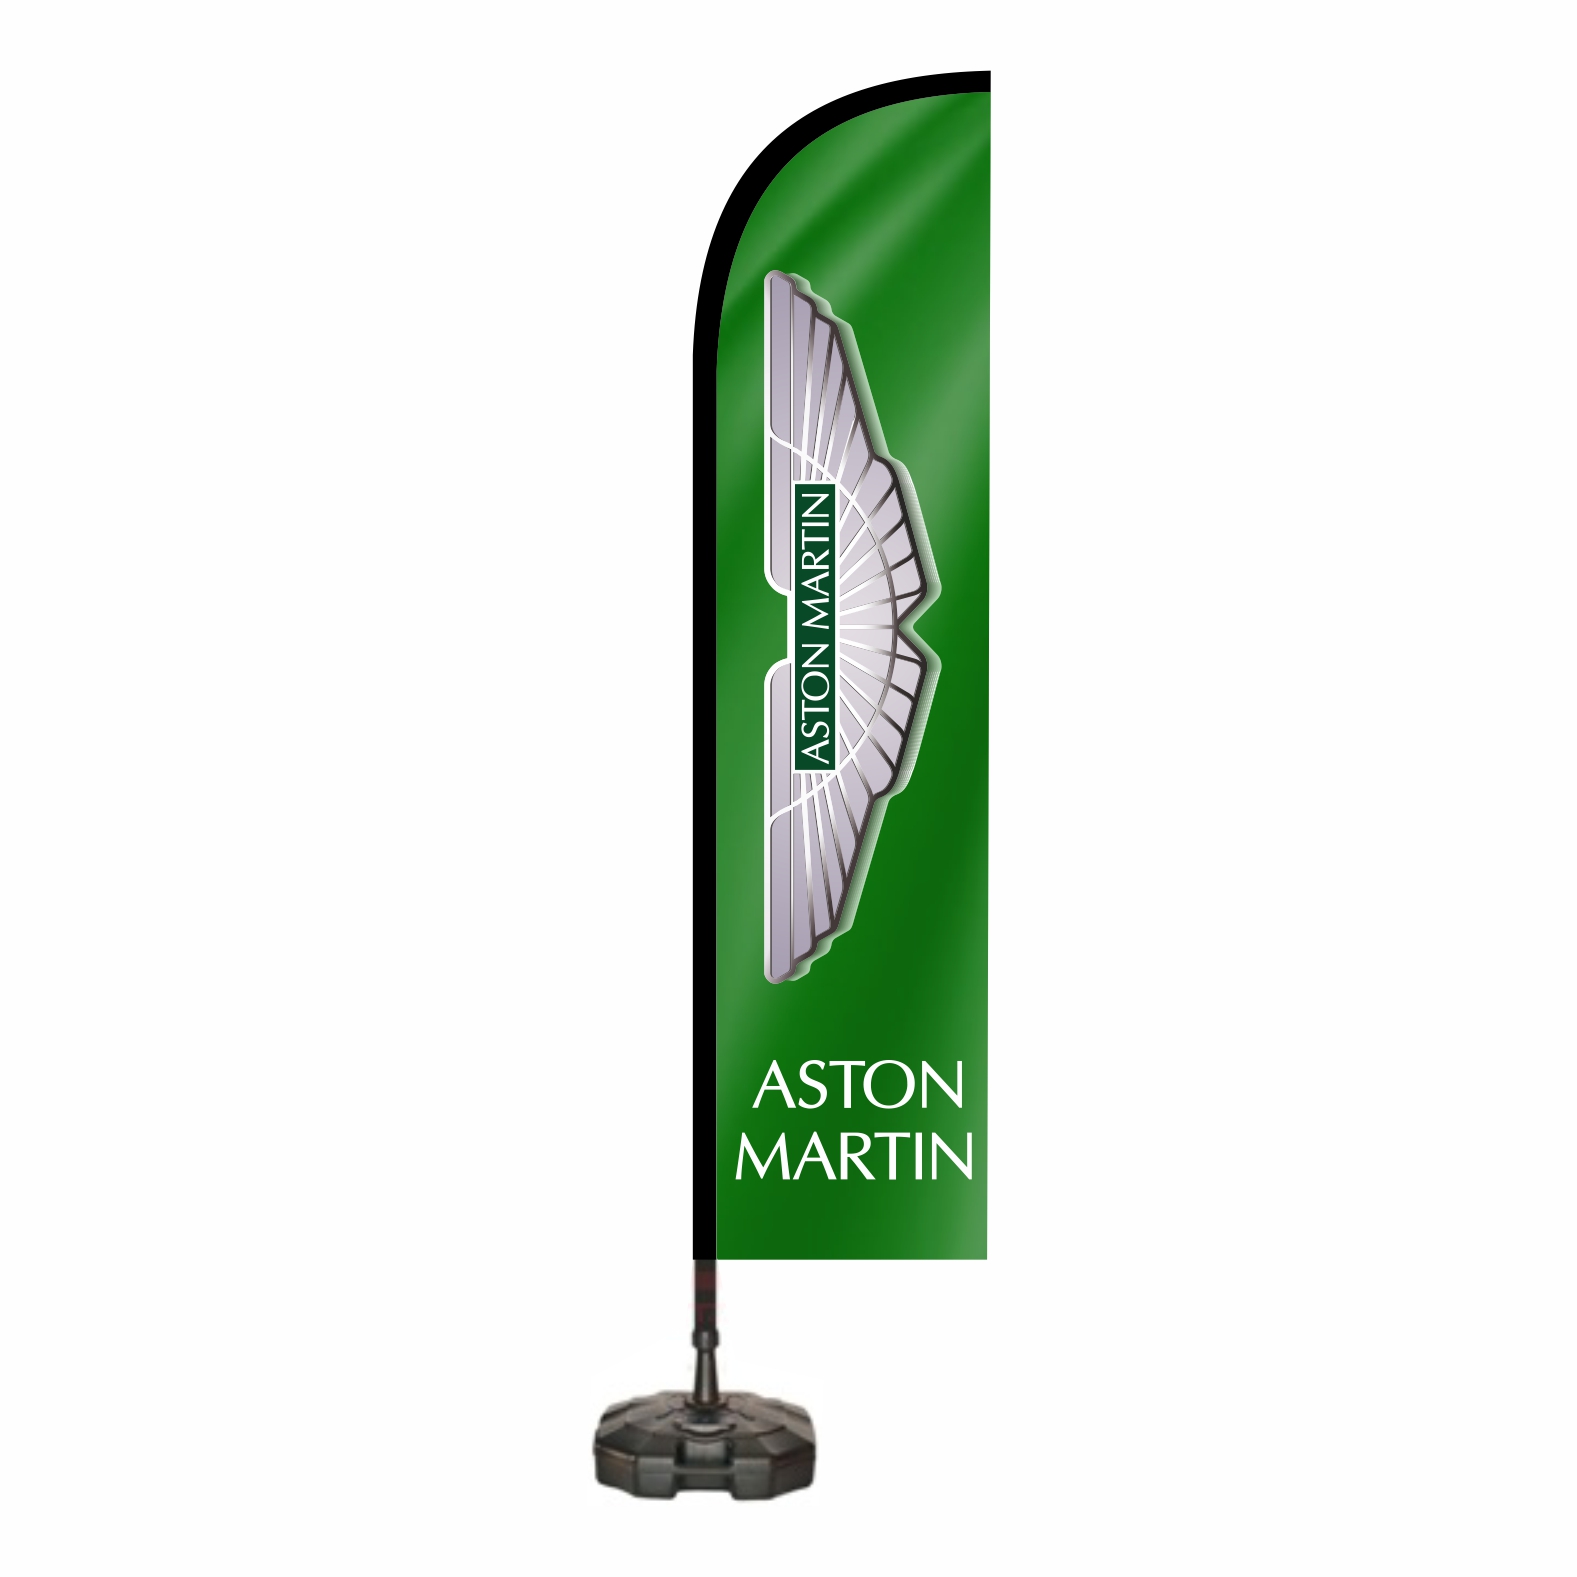 Aston Martin Oltal Bayra zellikleri